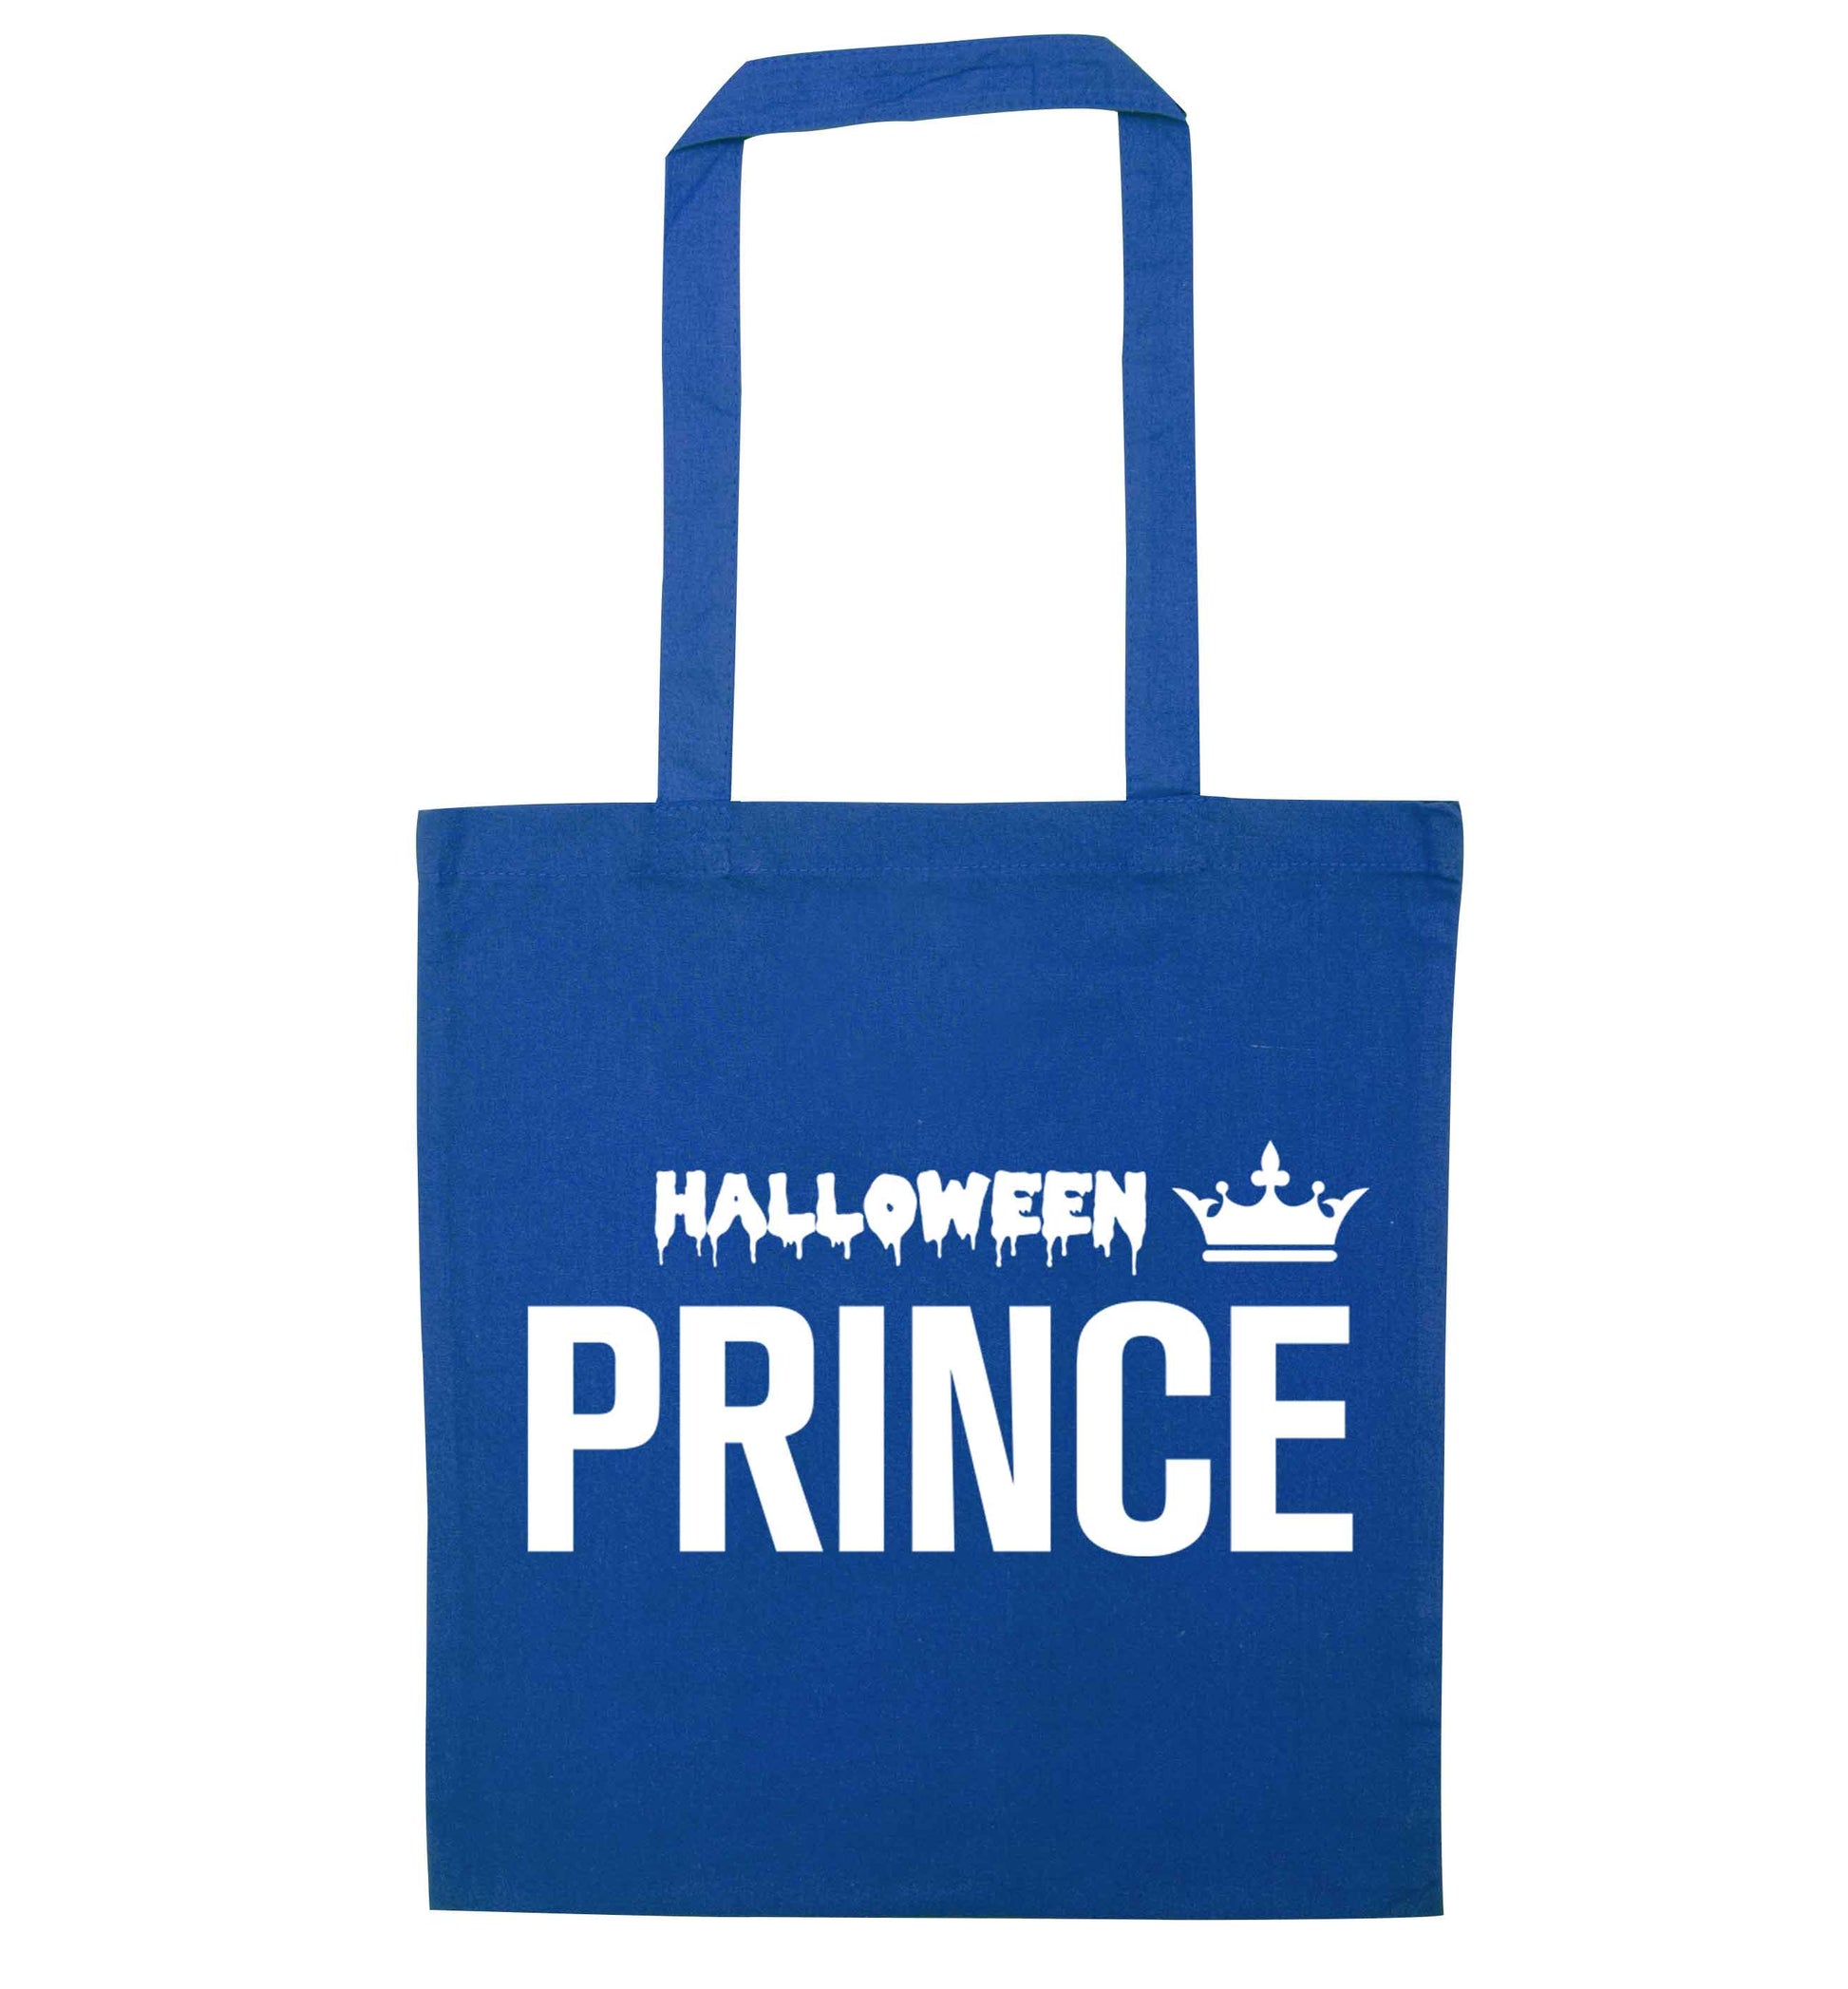 Halloween prince blue tote bag